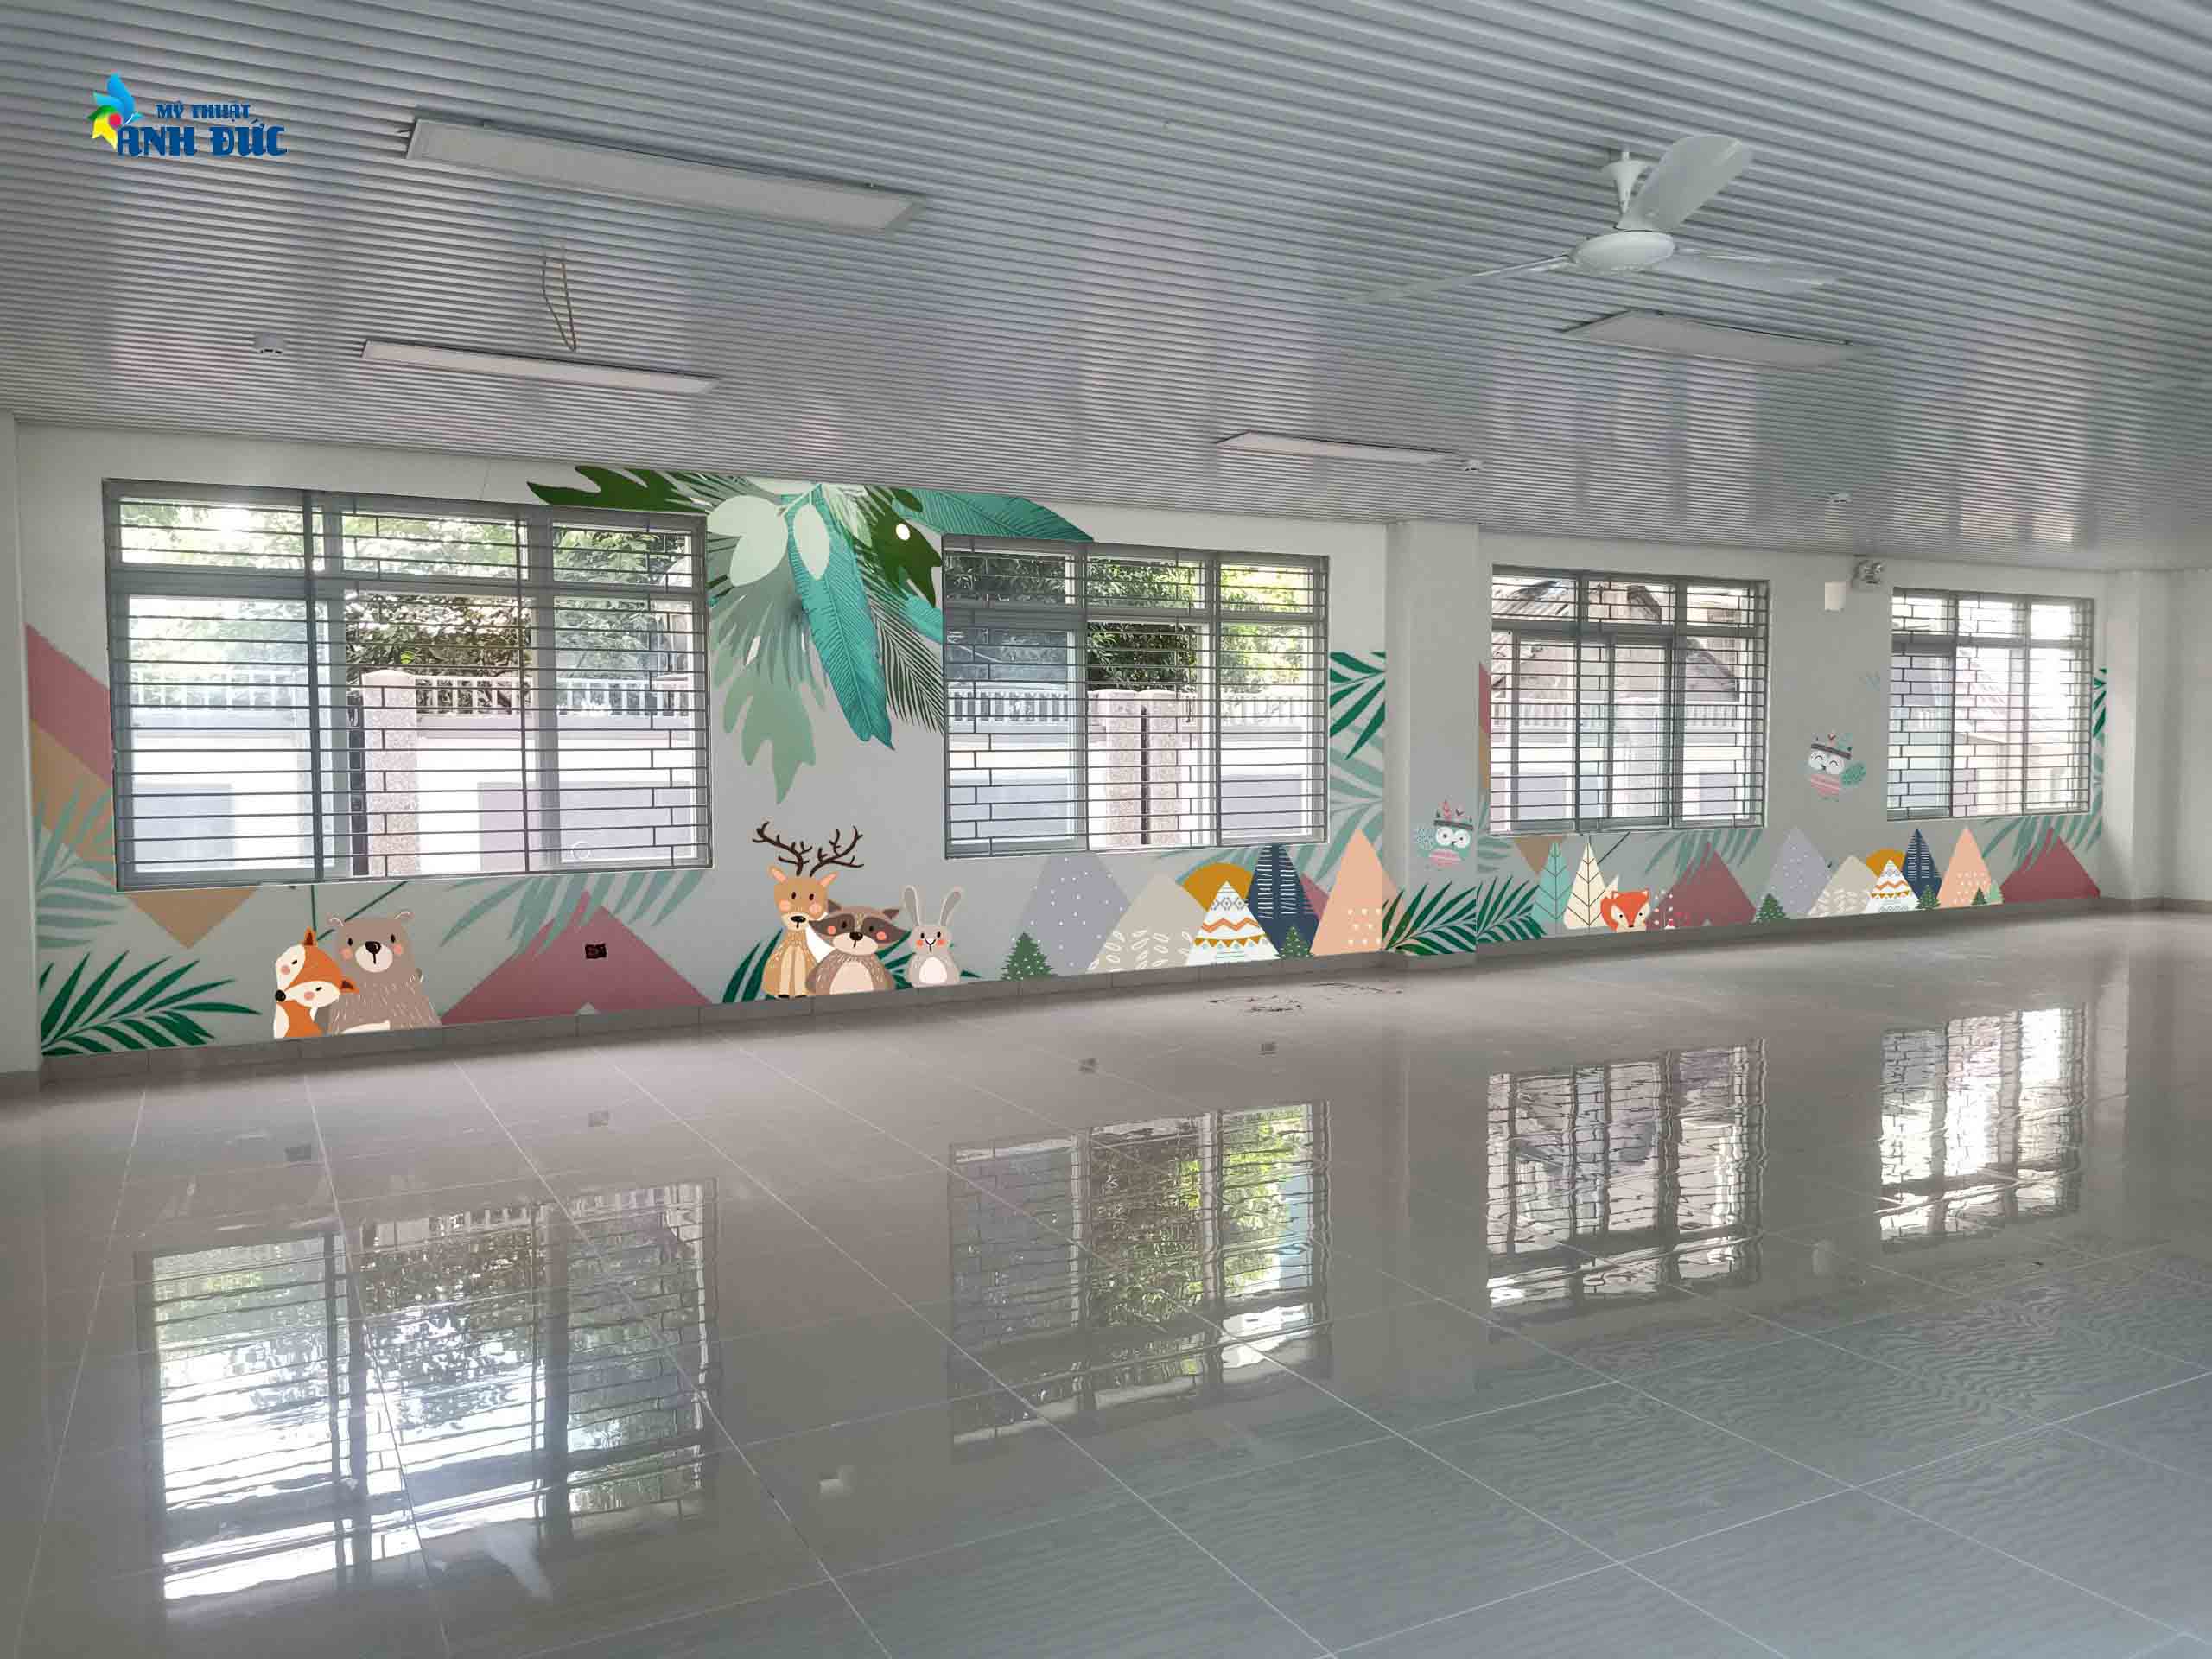 Vẽ tranh tường 3D cho phòng thư viện trường chuẩn THCS Thịnh Hào, quận Đống Đa